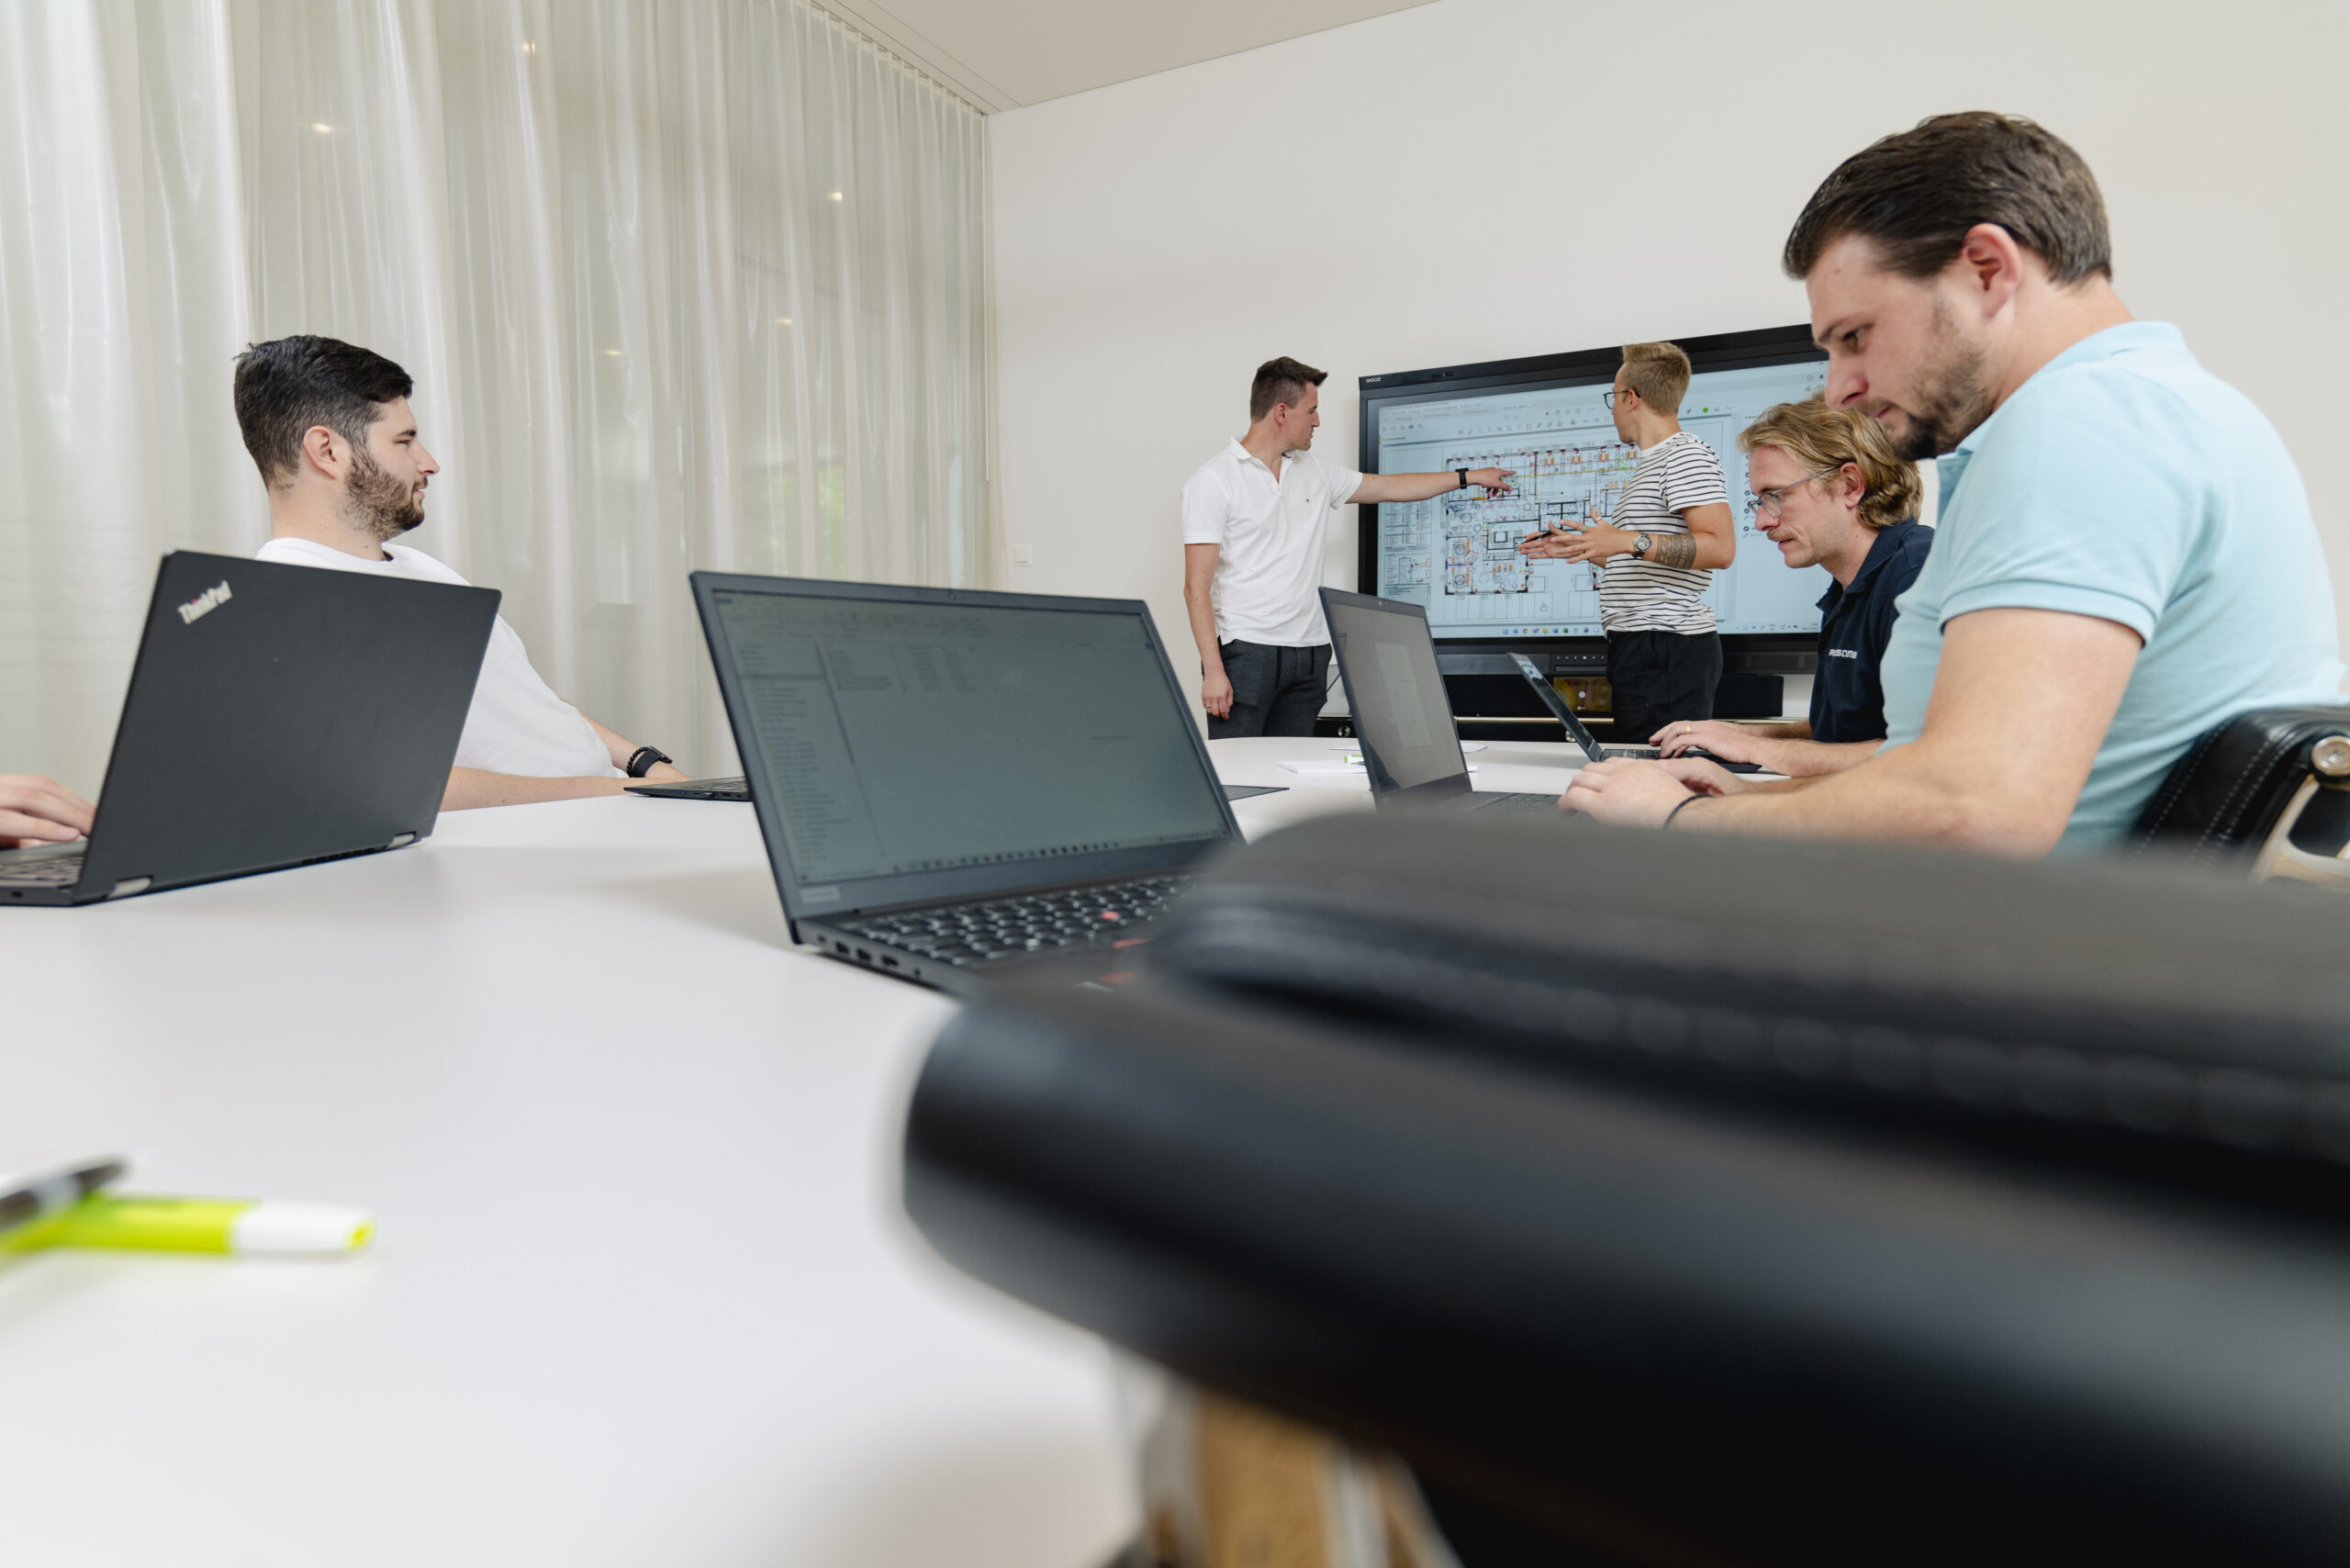 Eine Gruppe von Personen sitzt um einen Tisch herum und arbeitet mit Laptops. Im Hintergrund sind zwei Personen einen Plan am Präsentieren.